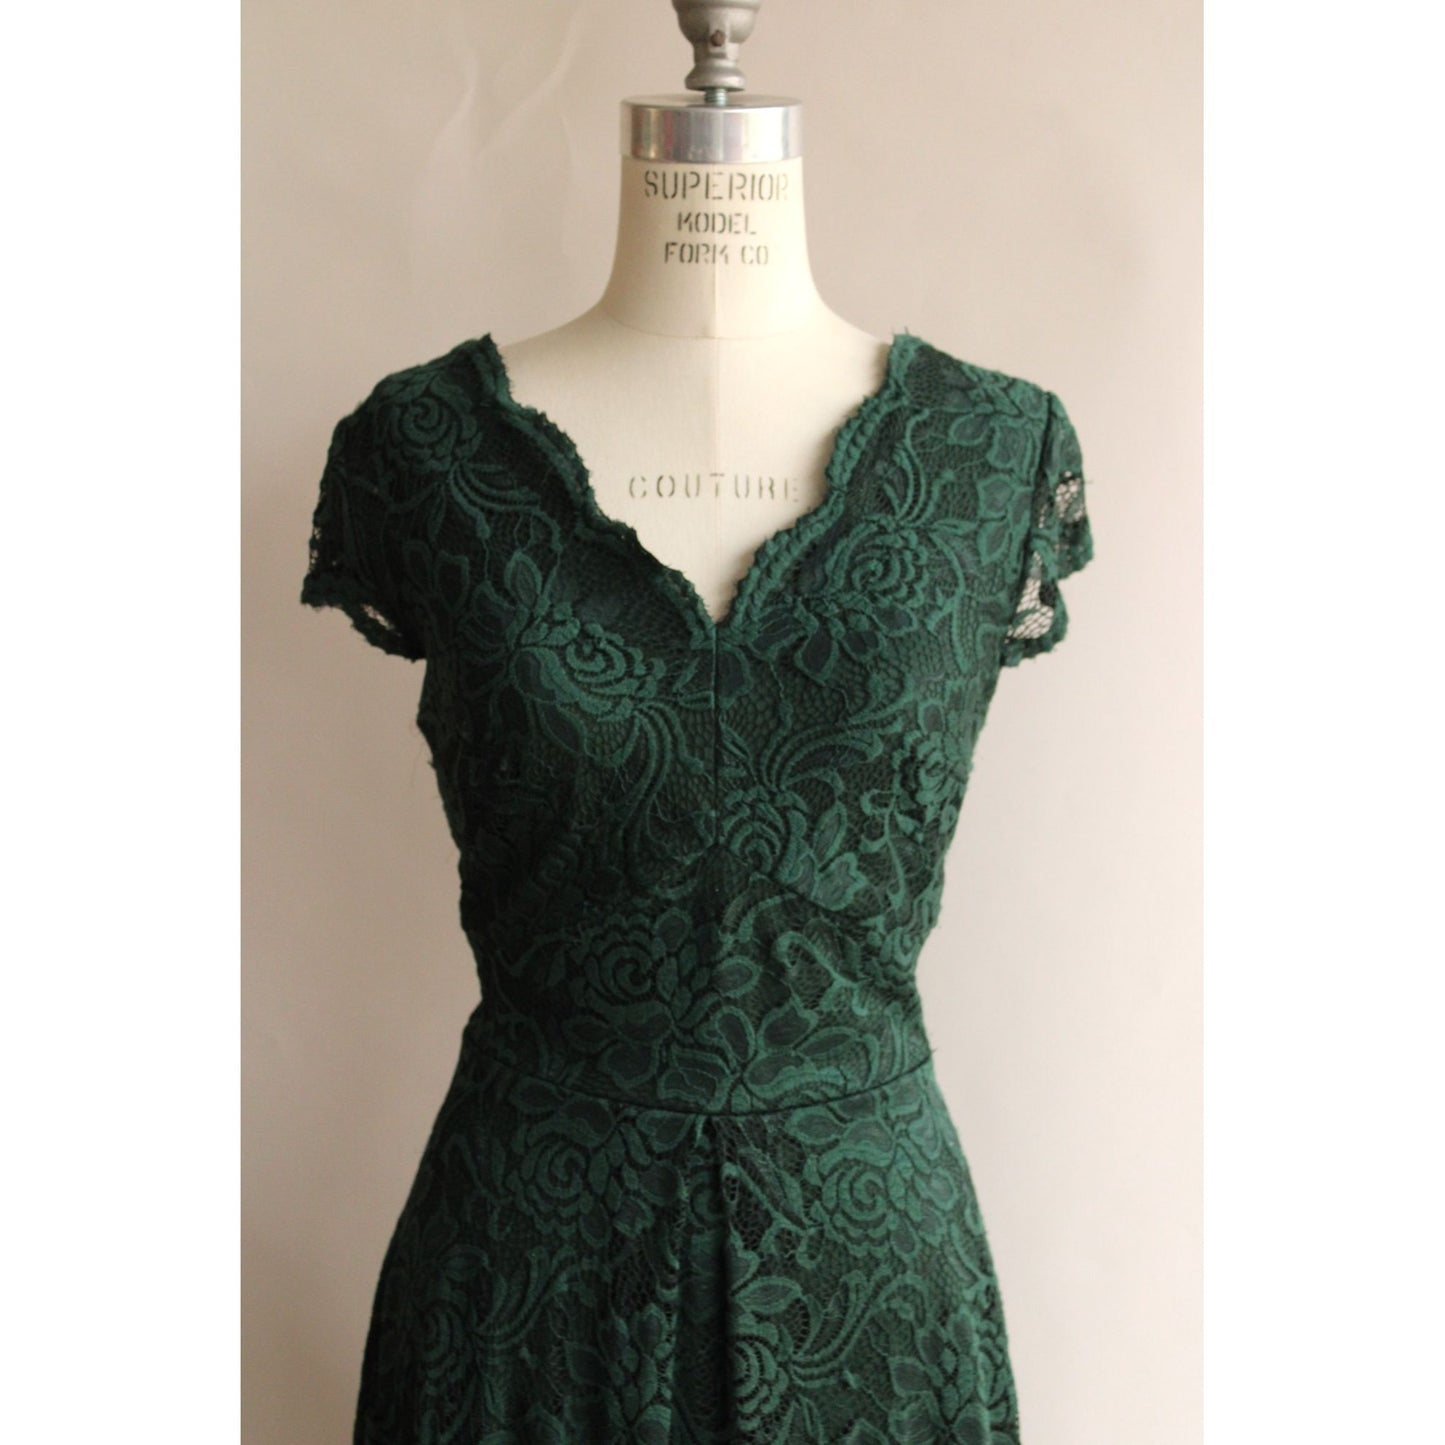 Aonour Green Lace Womens Dress, Size X